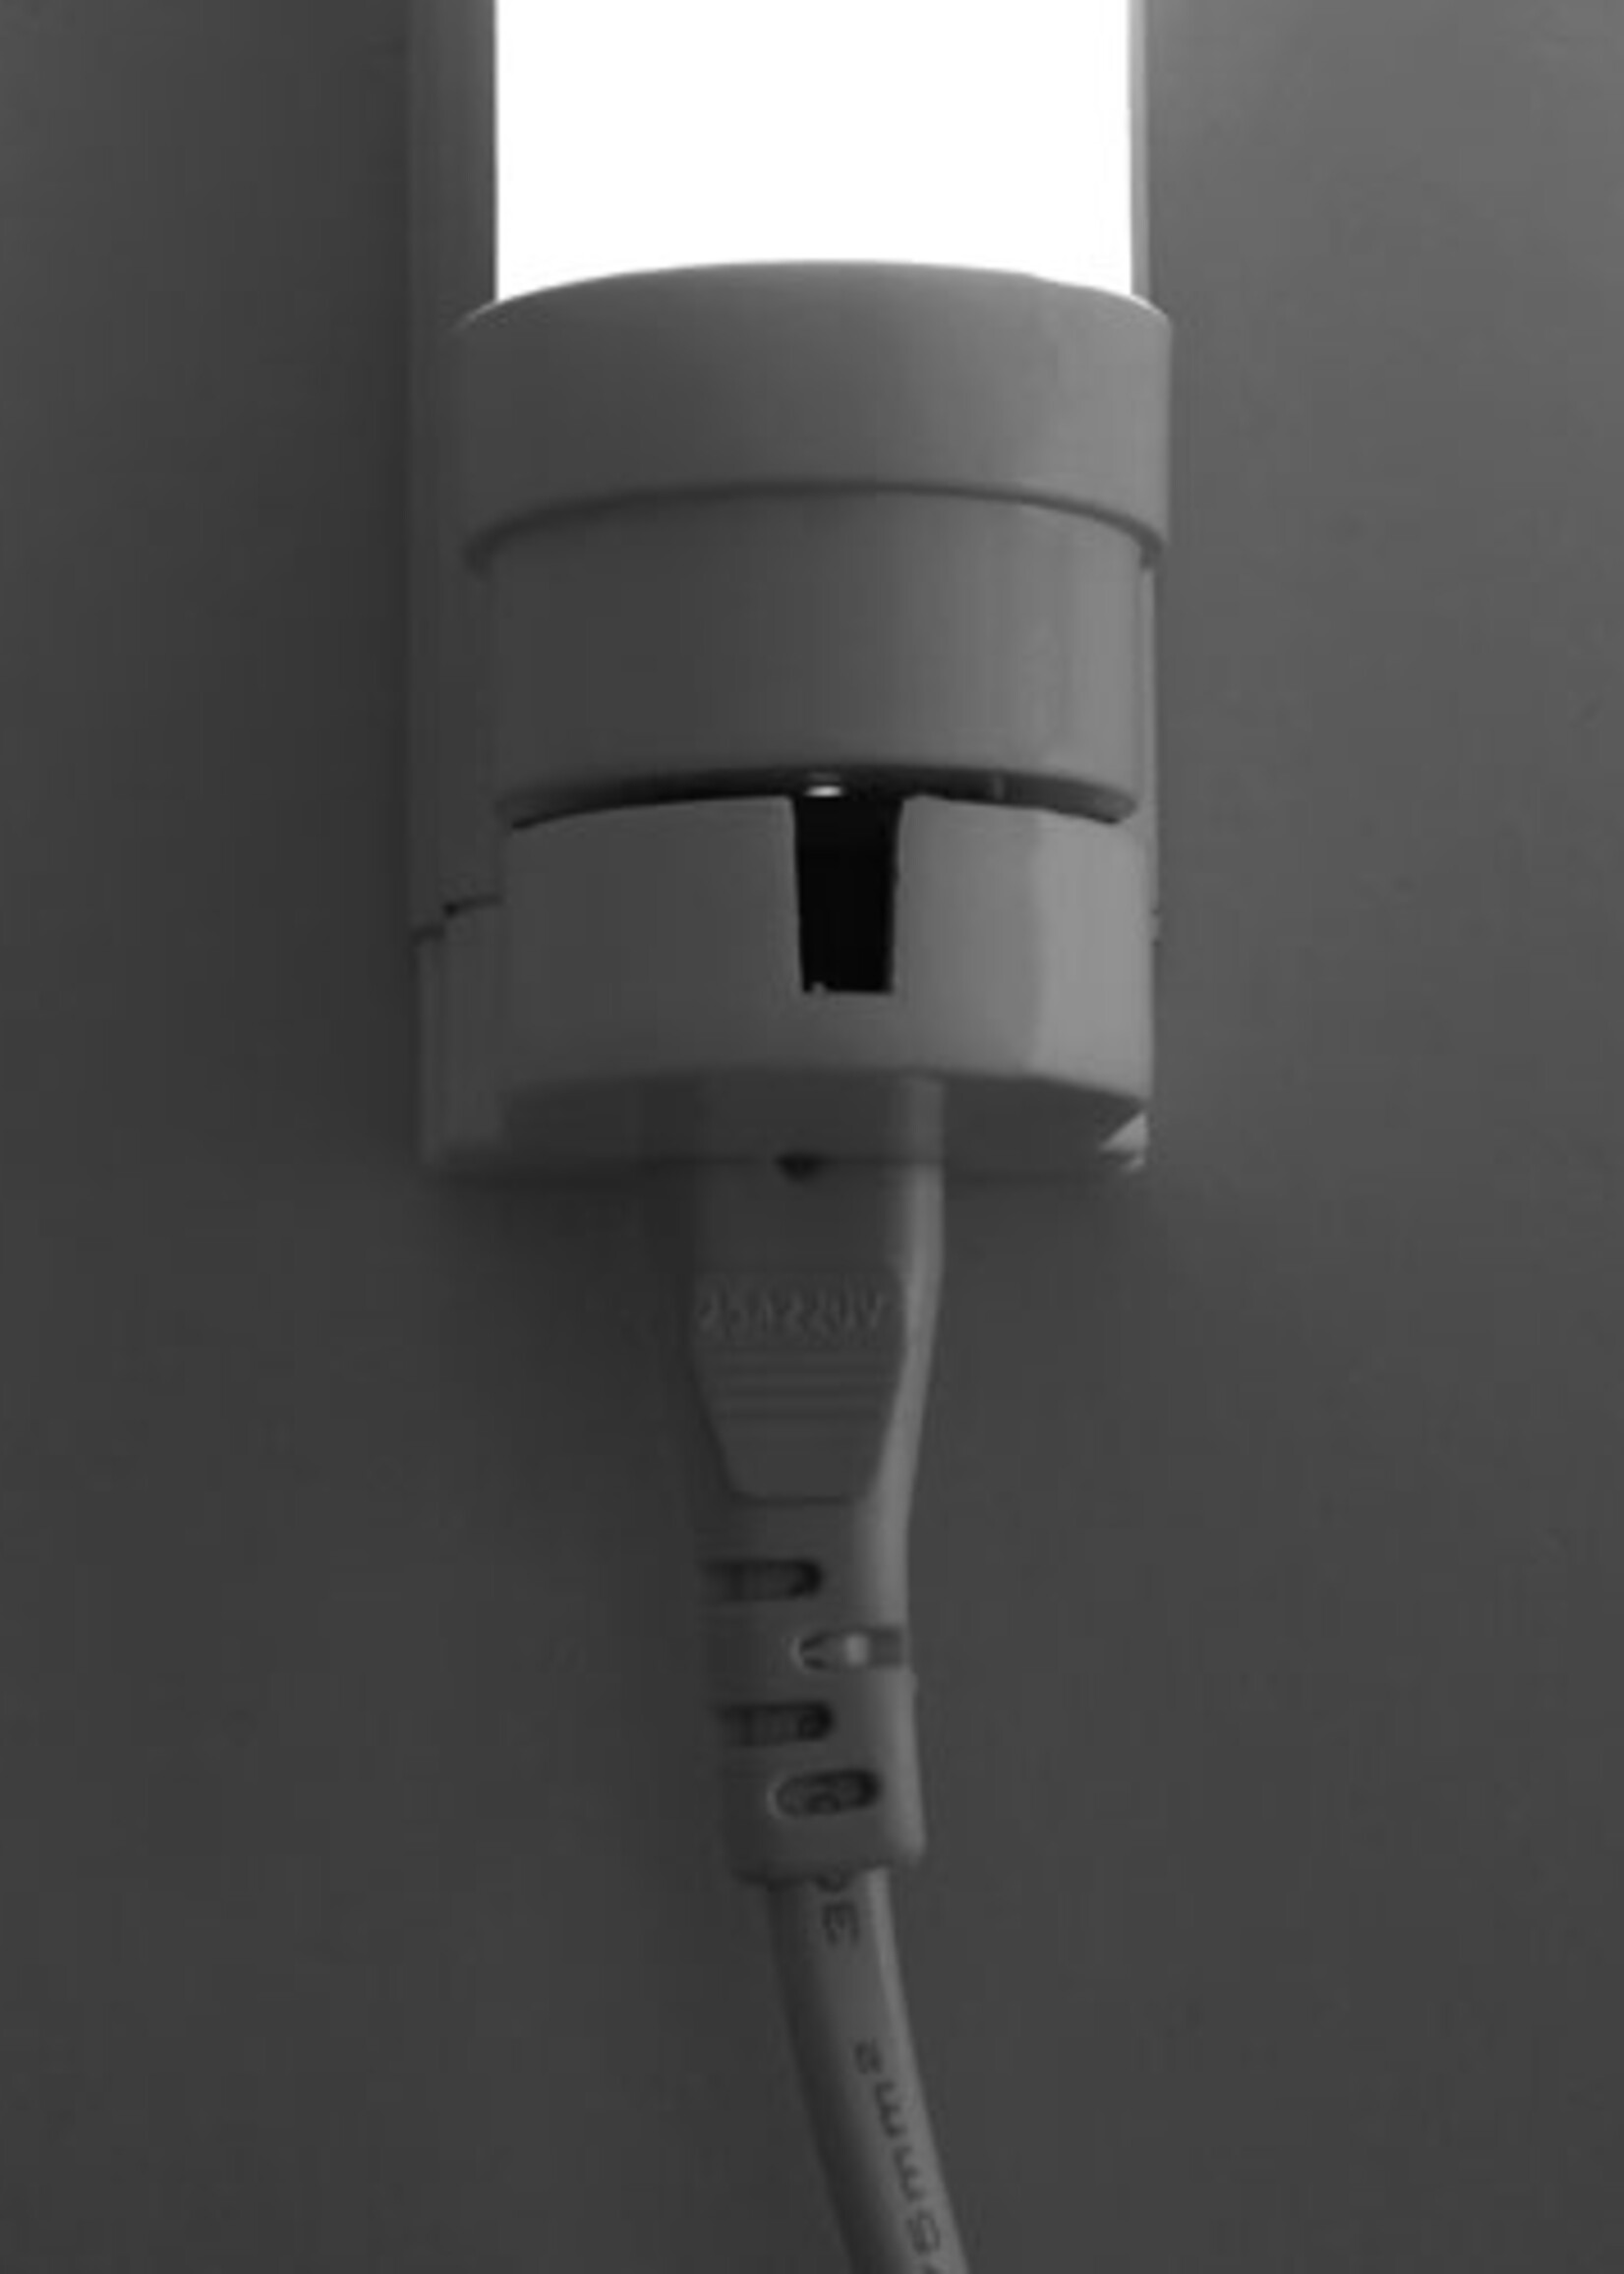 LEDWINKEL-Online LED TL Buis T8 120cm 18W 140lm/W - Pro High lumen